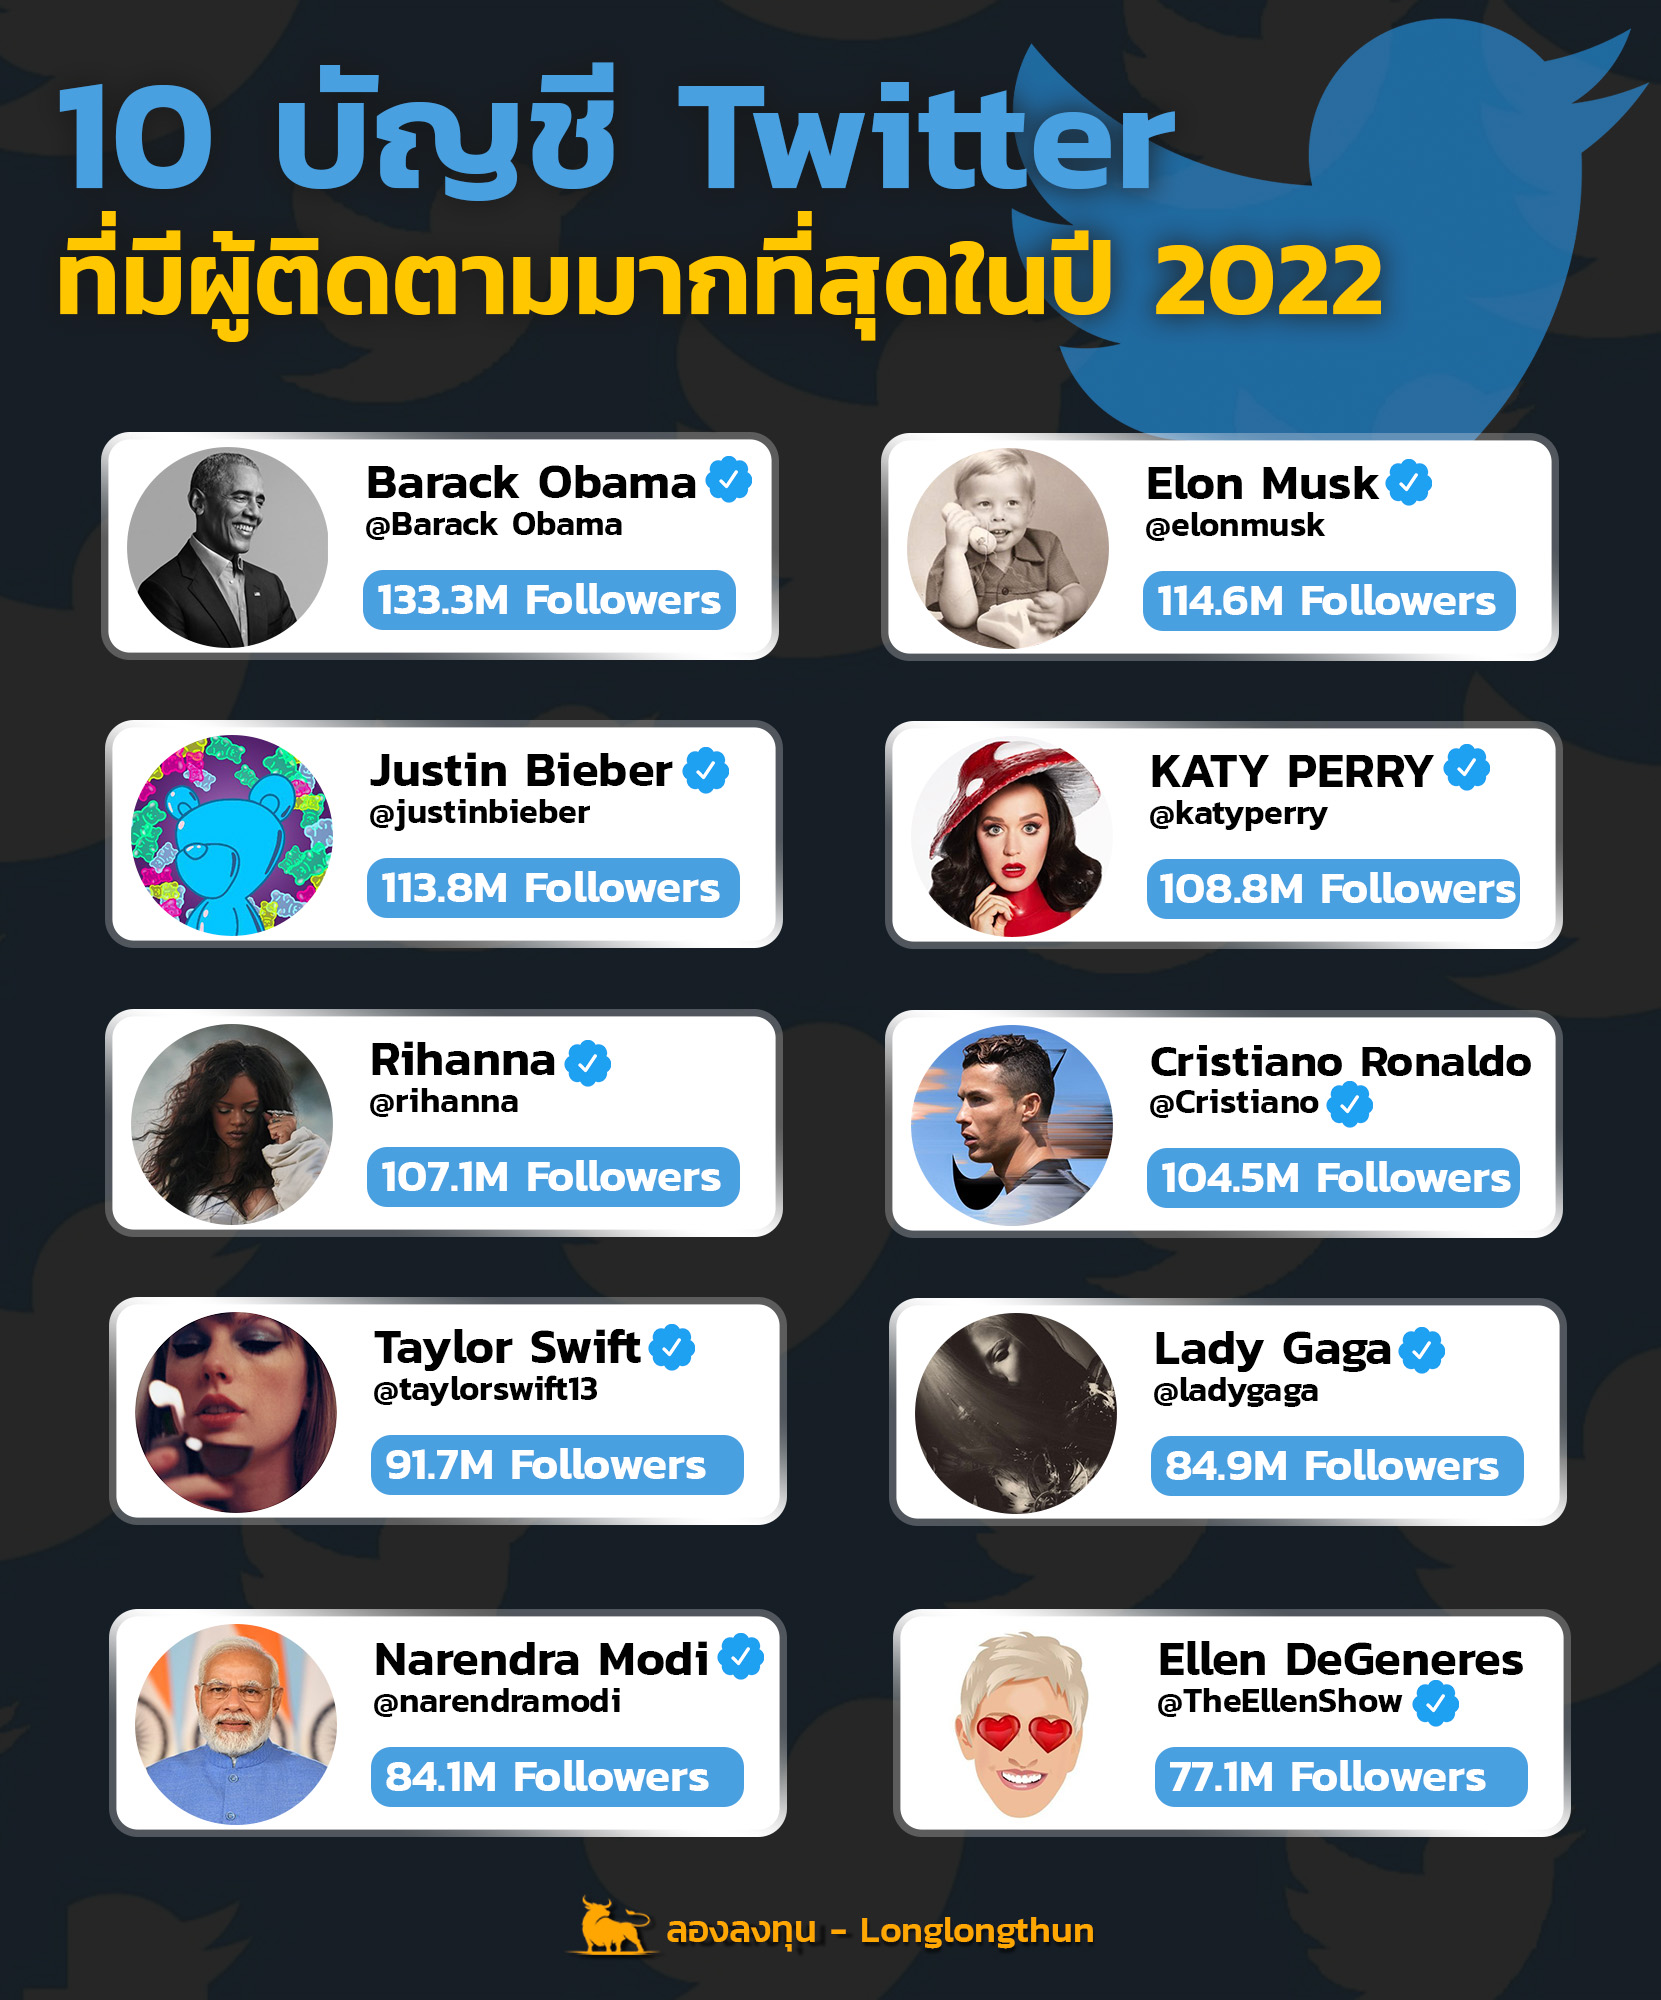 10 บัญชี Twitter ที่มีผู้ติดตามมากที่สุดในปี 2022